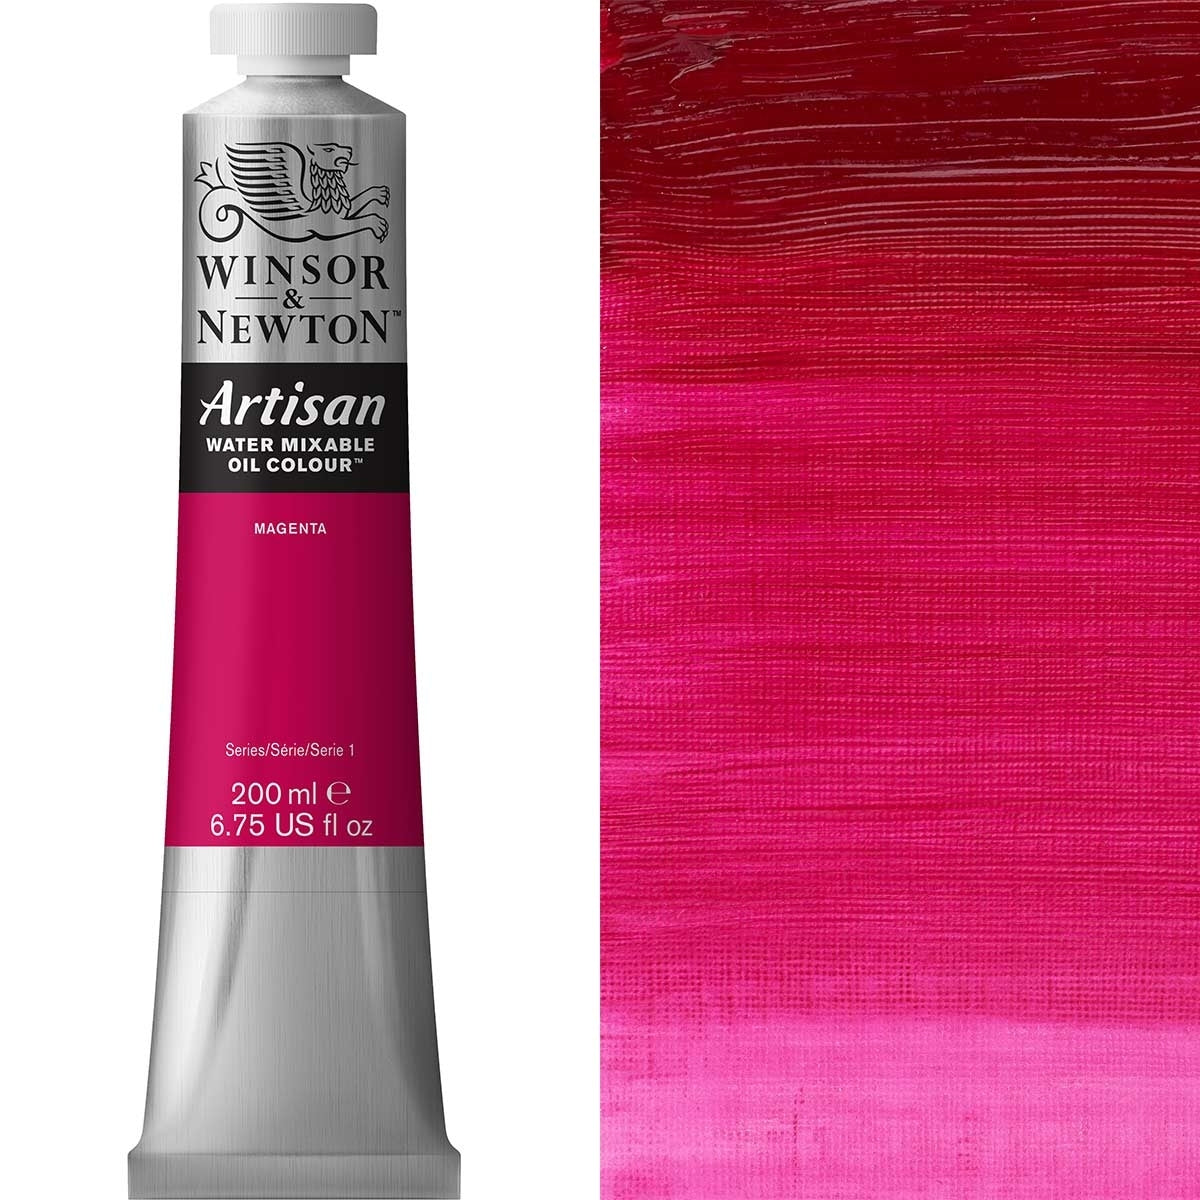 Winsor en Newton - Artisan Oil Color Water Mixable - 200ml - Magenta